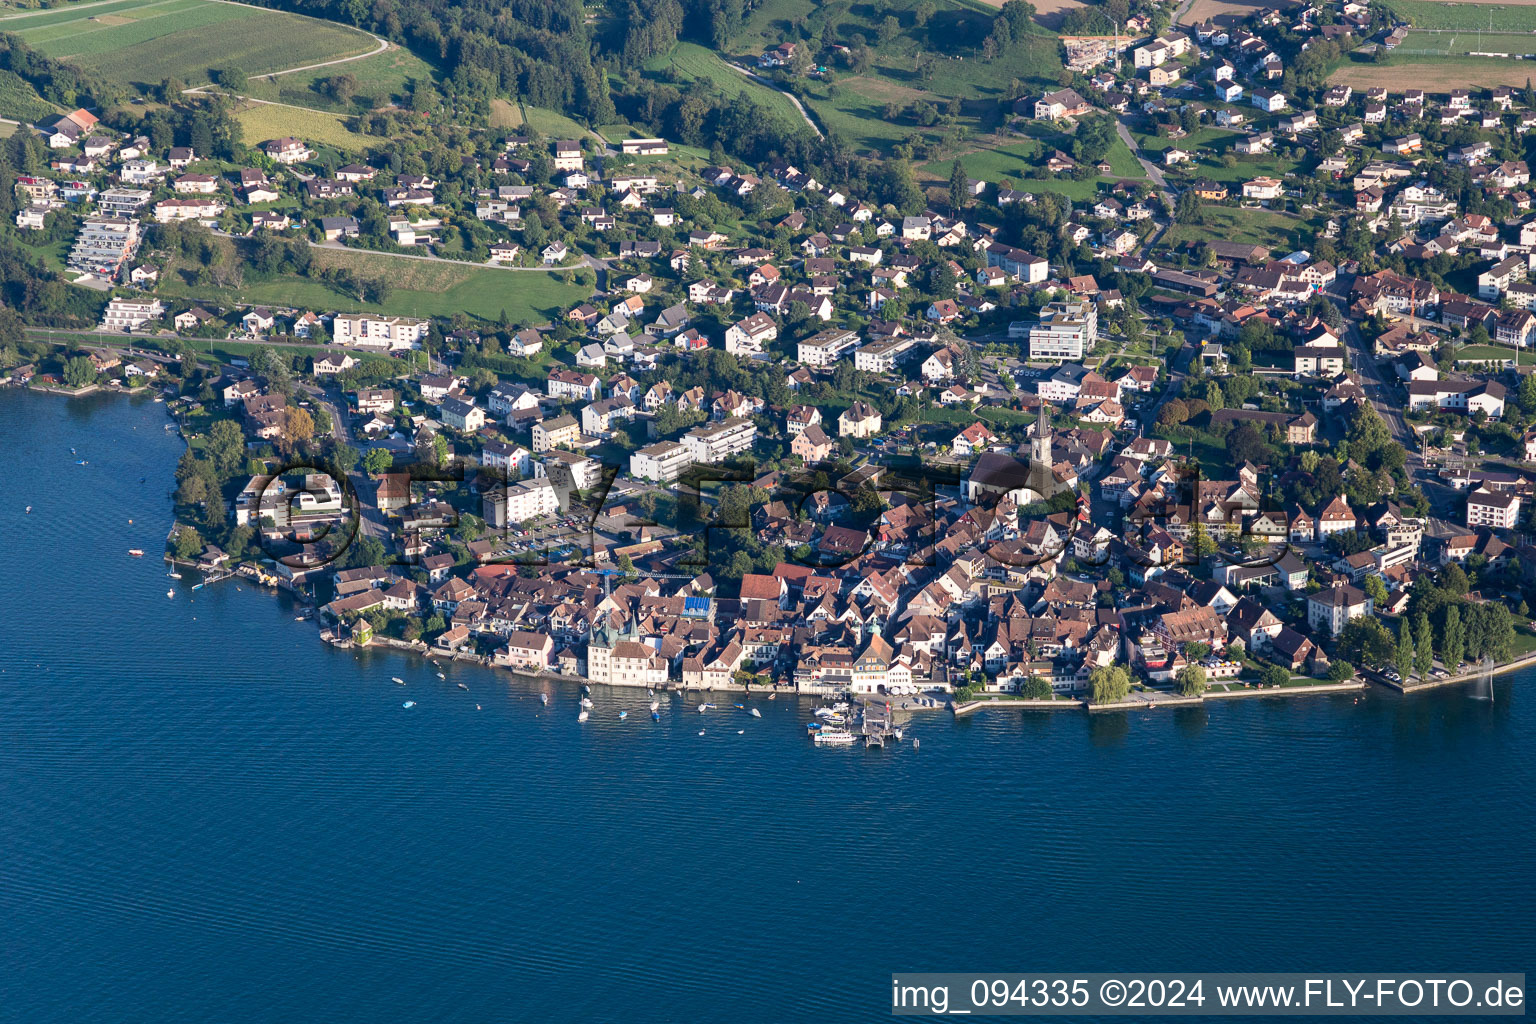 Luftbild von Ortskern am Uferbereich des Bodensee in Steckborn im Kanton Thurgau, Schweiz